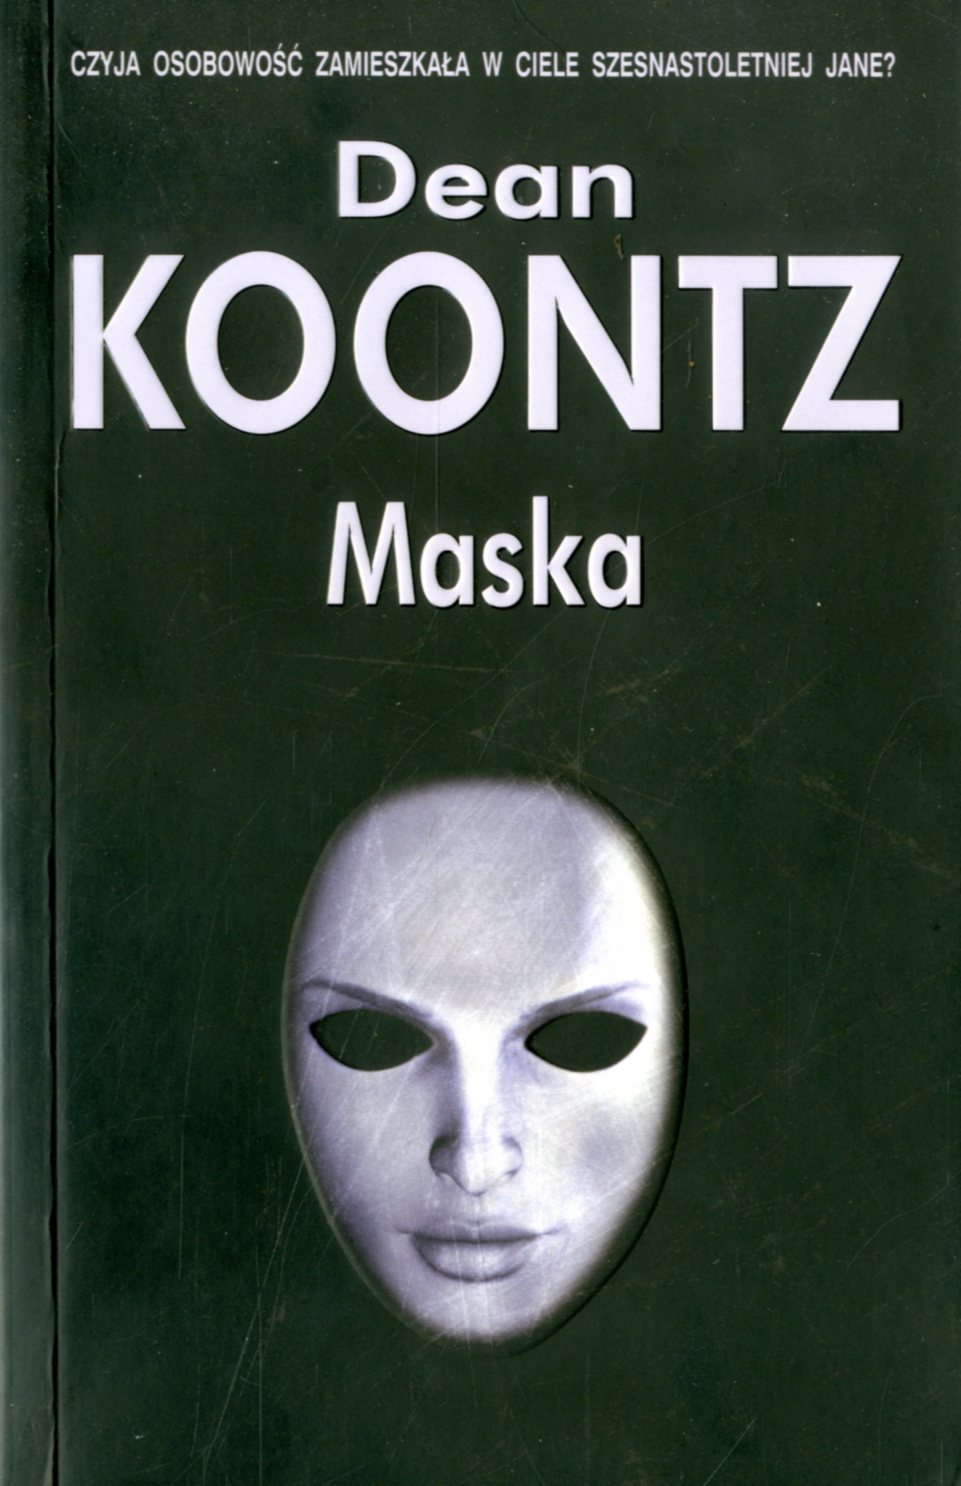 Книга с маской на обложке. Книга про маски